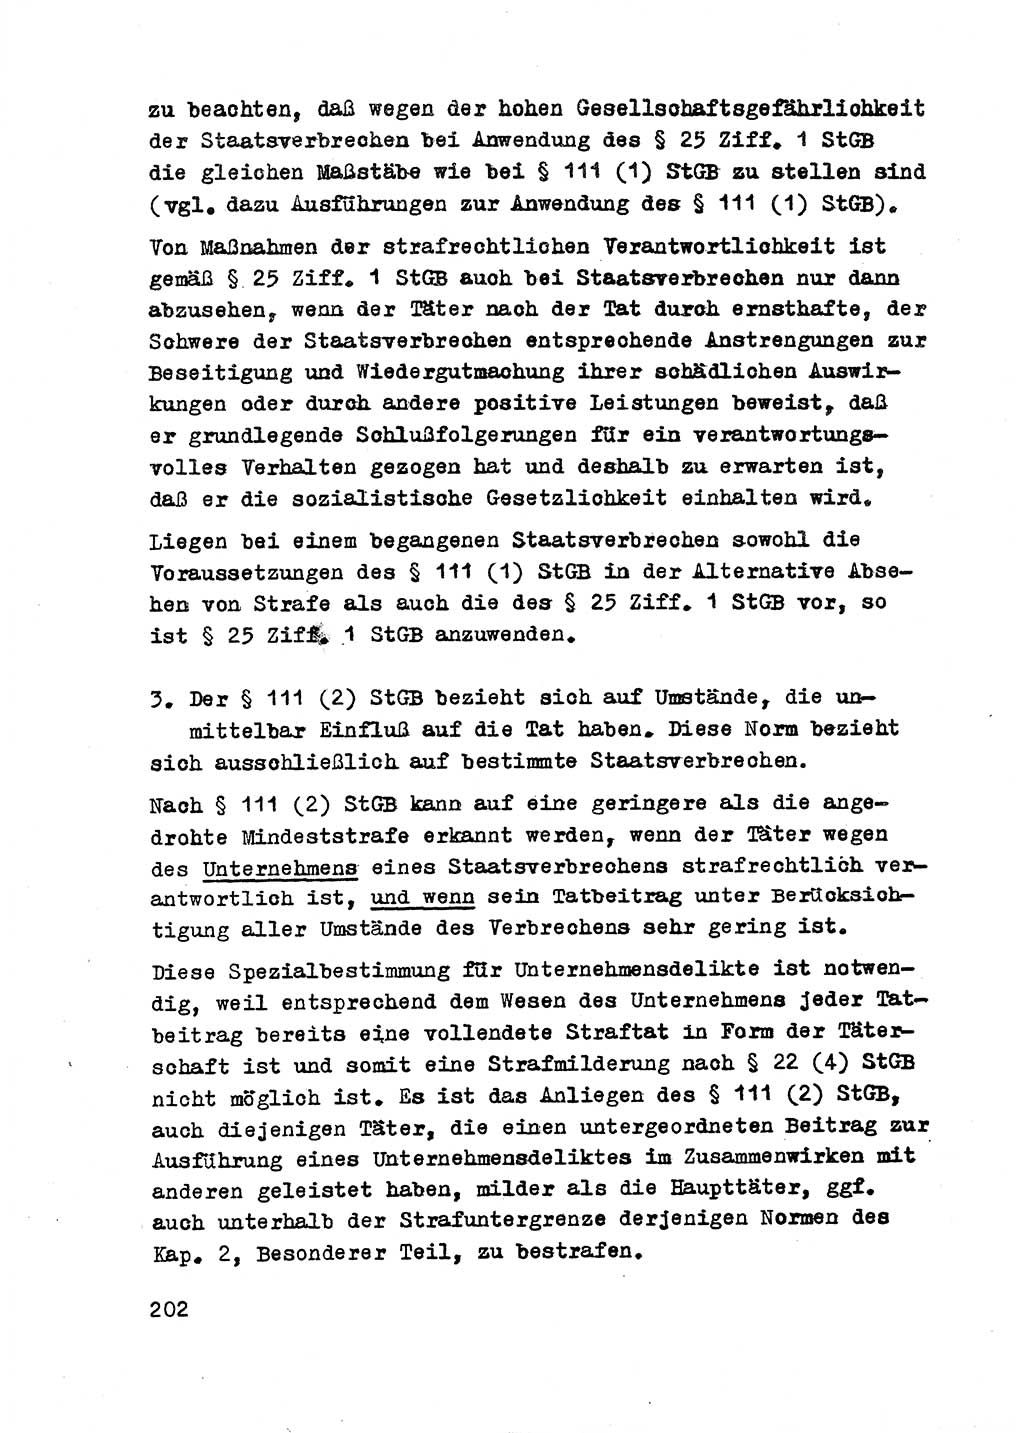 Strafrecht der DDR (Deutsche Demokratische Republik), Besonderer Teil, Lehrmaterial, Heft 2 1969, Seite 202 (Strafr. DDR BT Lehrmat. H. 2 1969, S. 202)